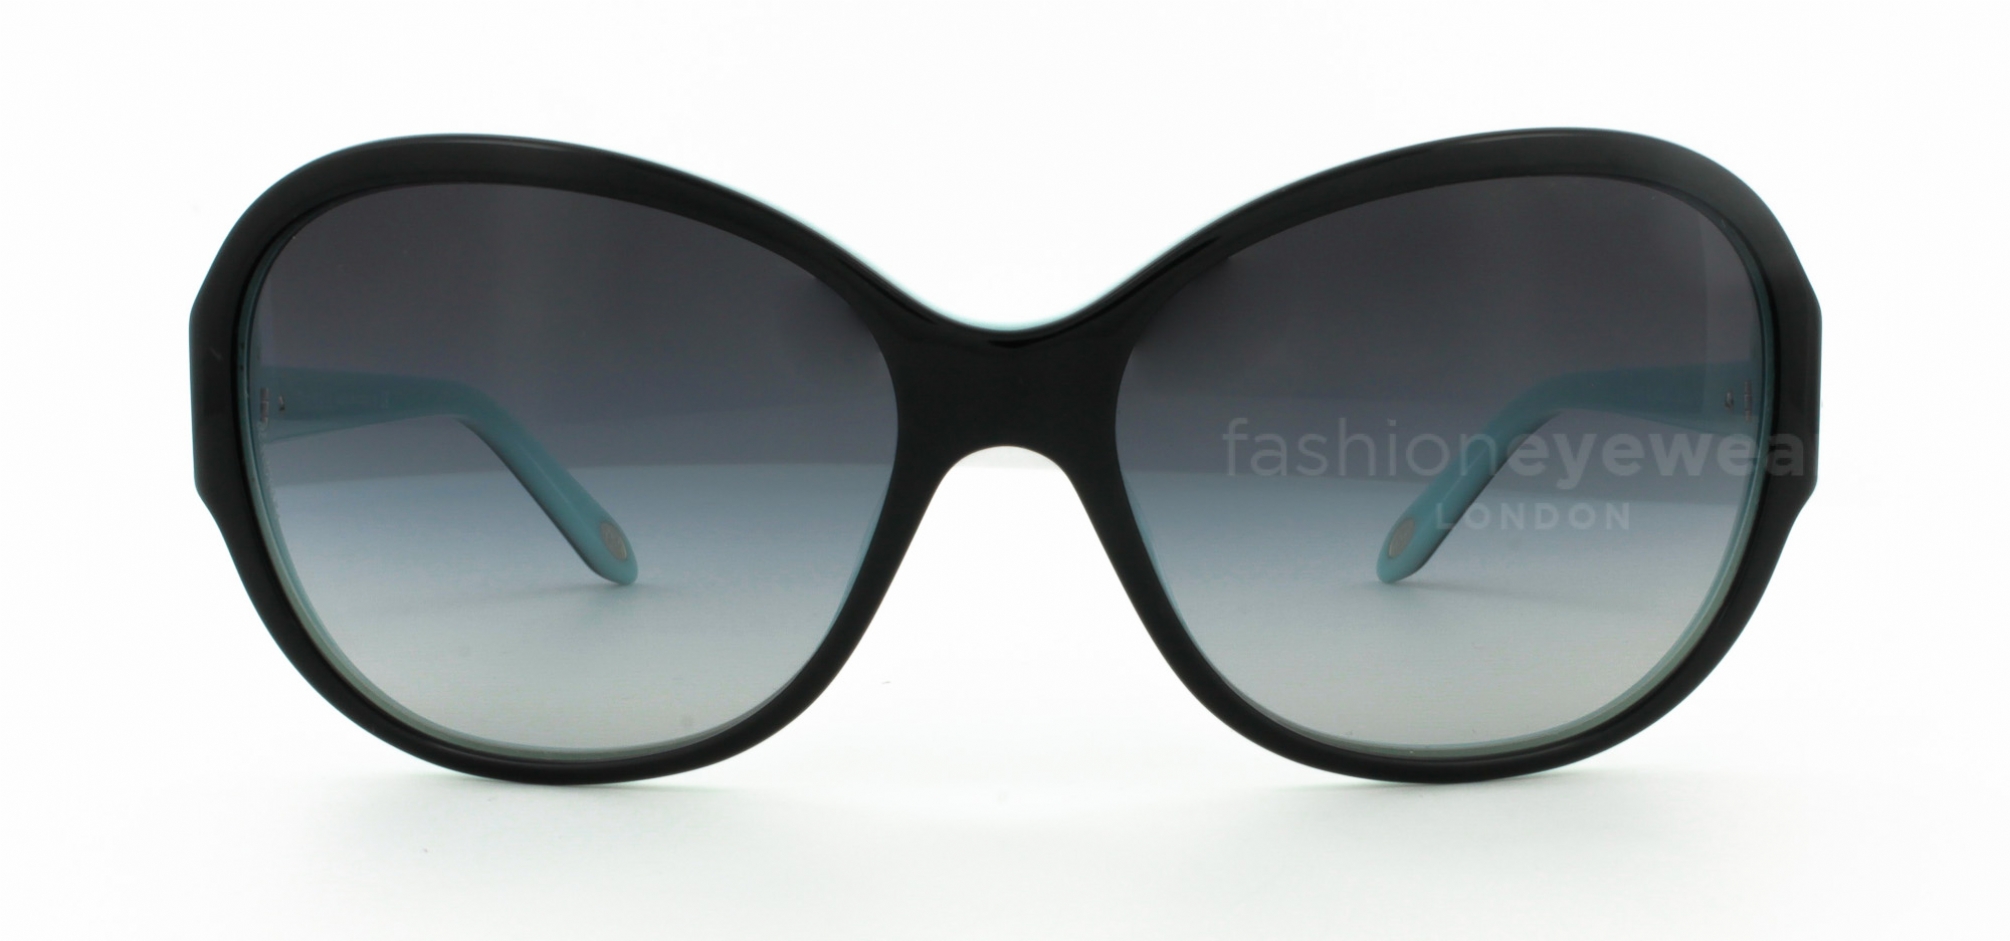 Tiffany 4068b Sunglasses